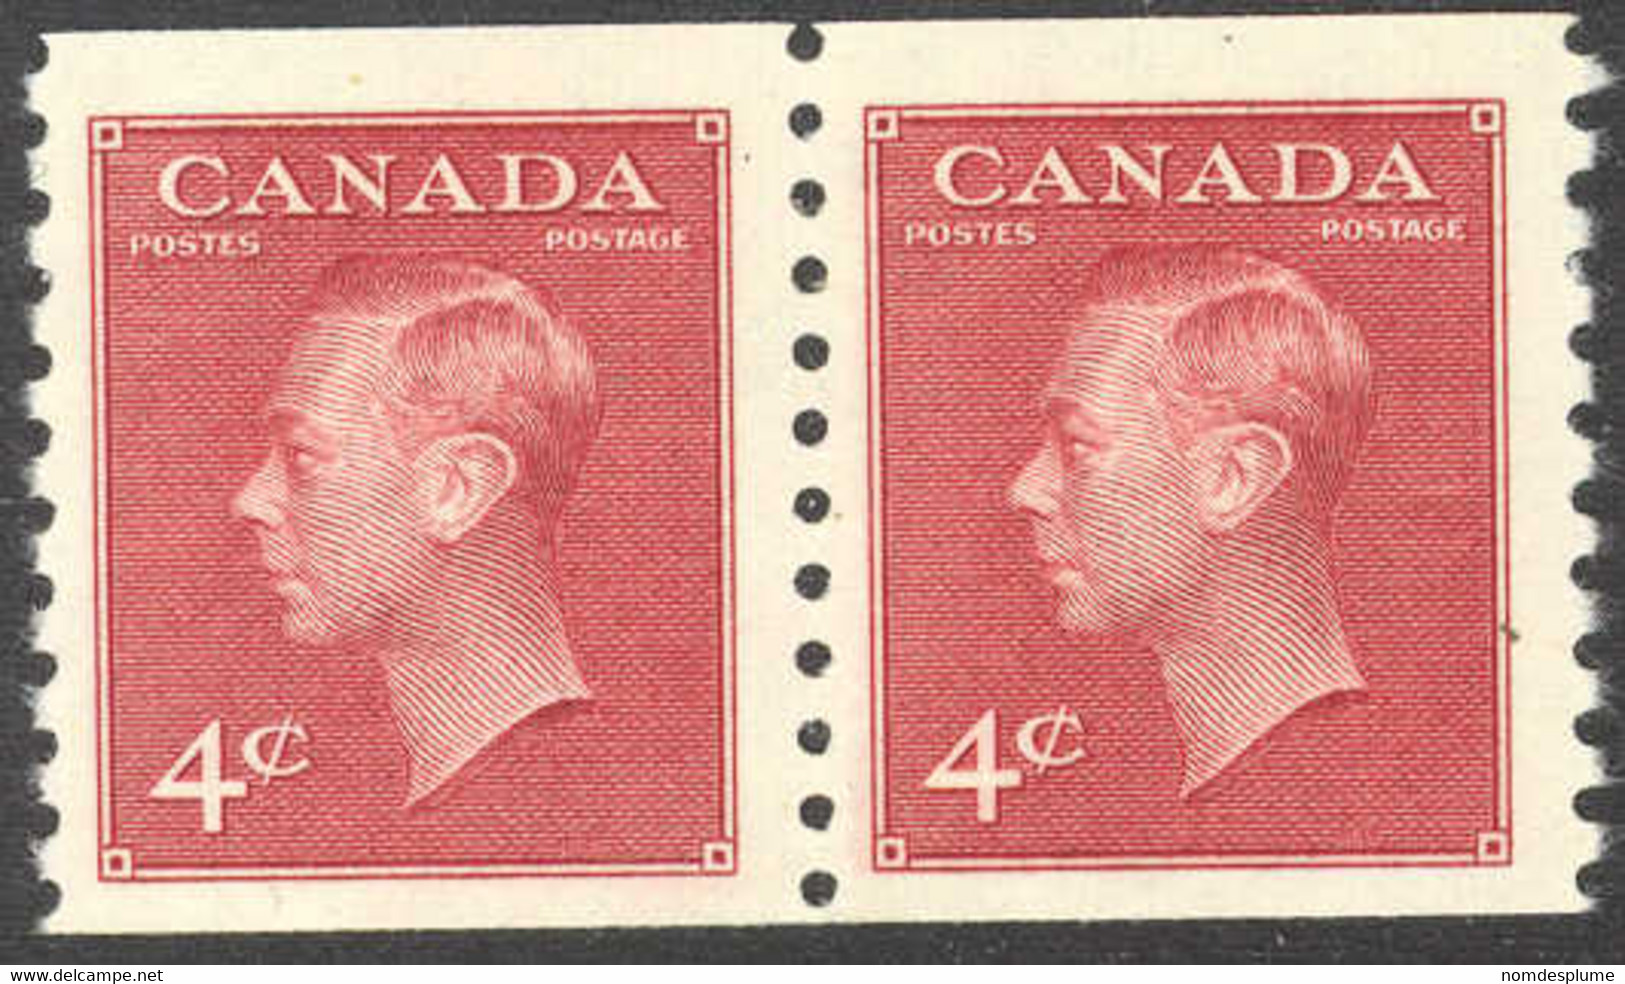 1438) Canada 300 George VI Coil Mint 1950 - Rollo De Sellos